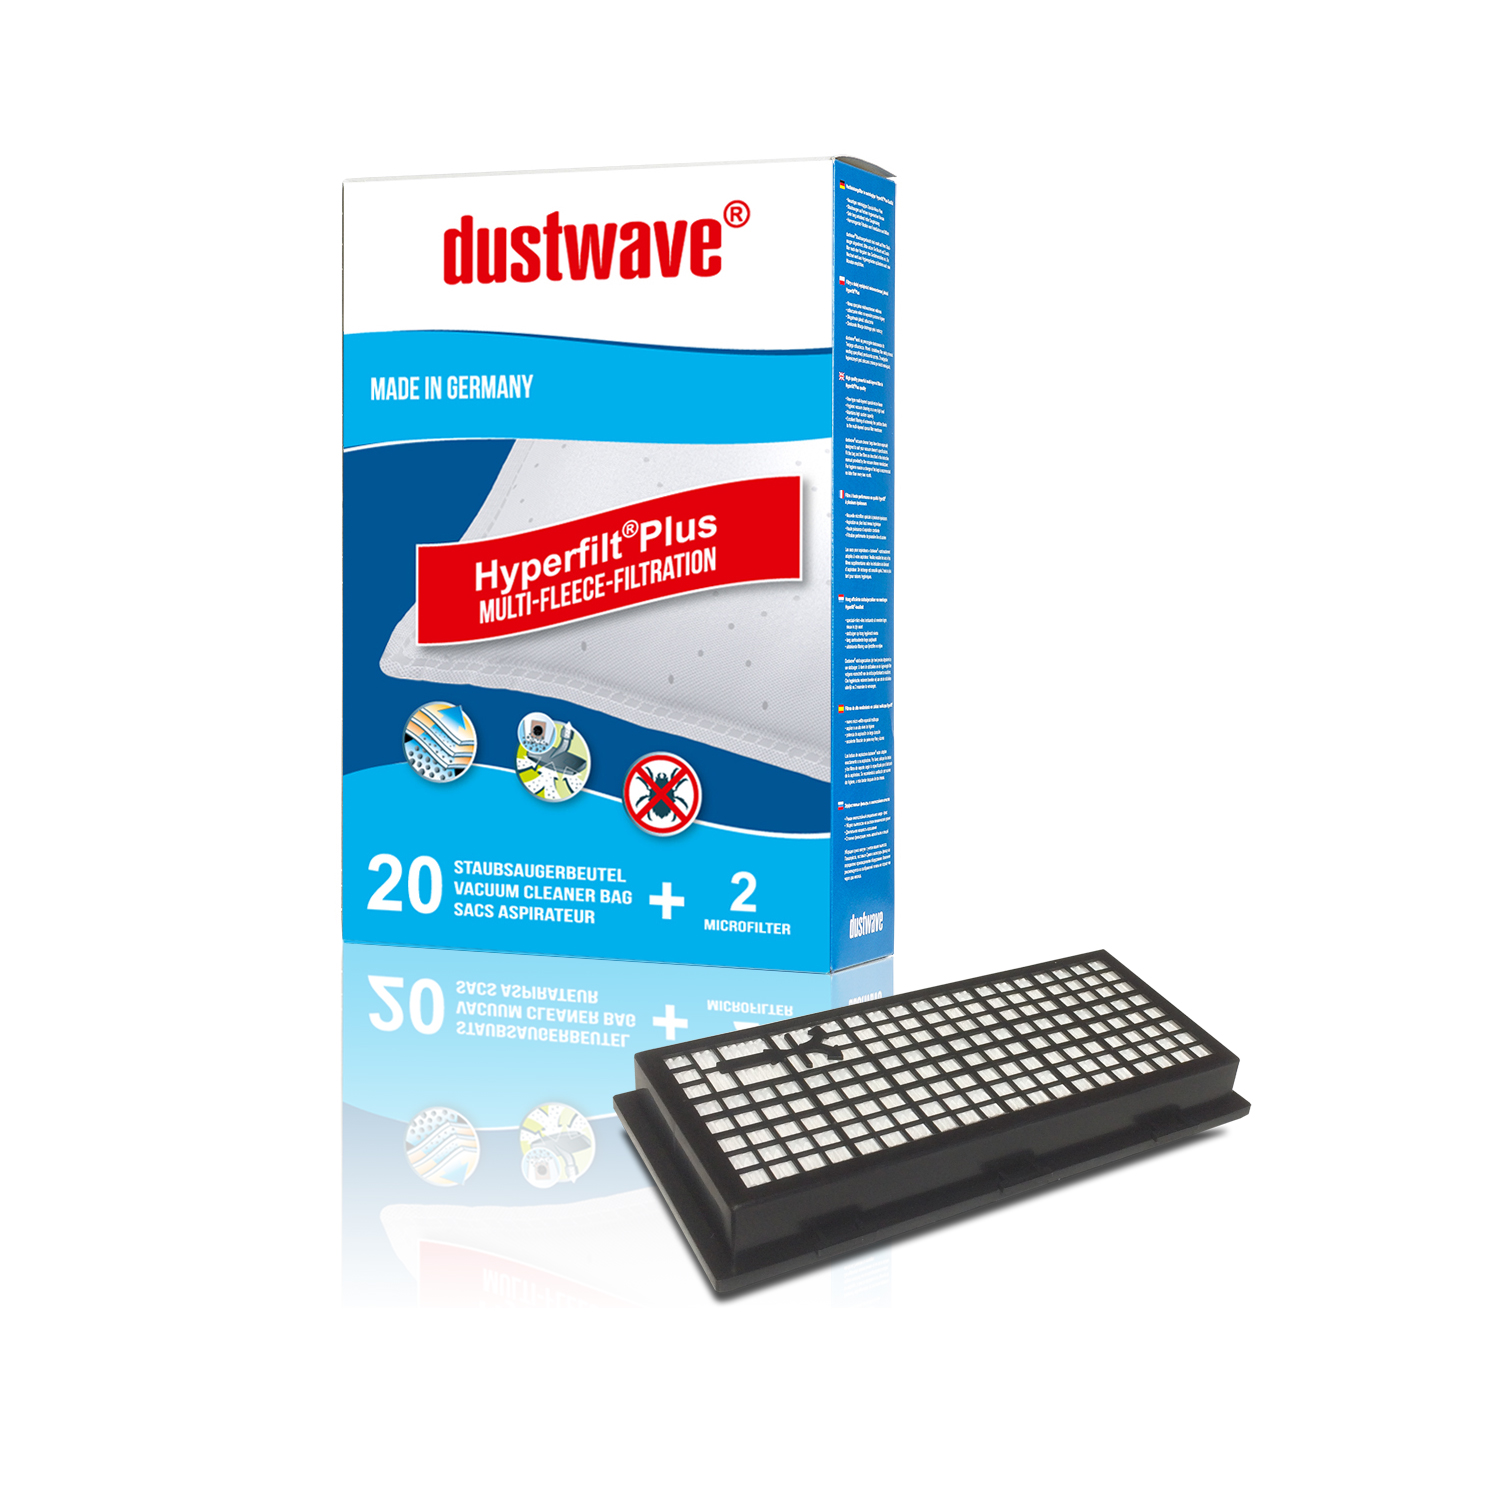 20 Staubbeutel + HEPA-Filter (808) passend für Miele - Classic C1 Bodenstaubsauger - dustwave® Markenstaubbeutel Made in Germany